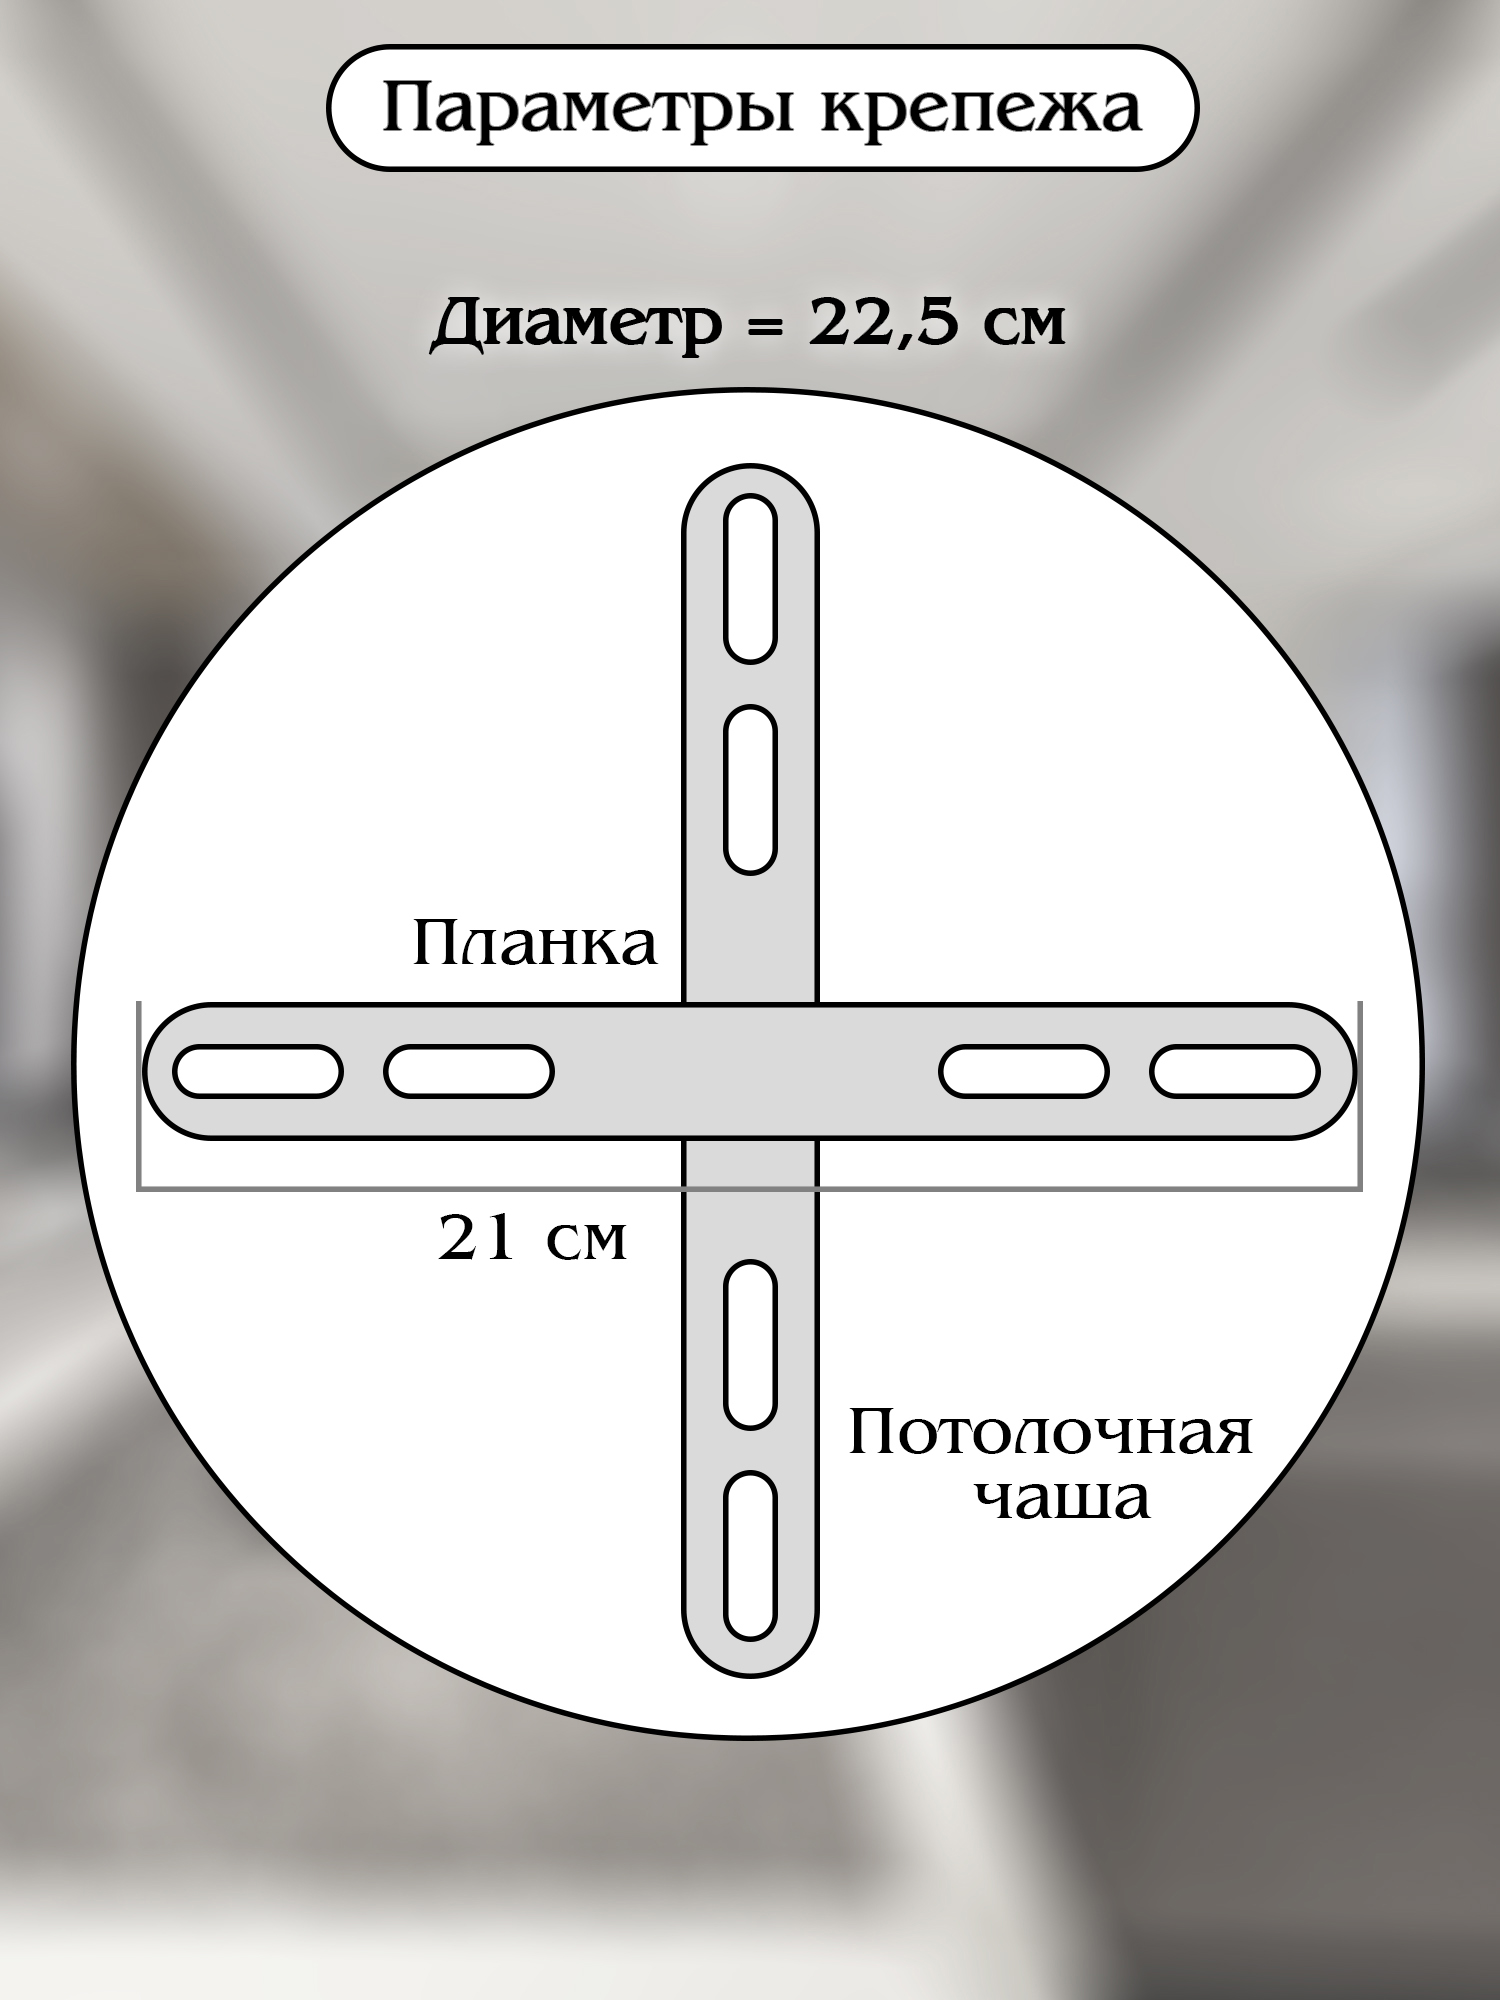 Светодиодный светильник NATALI KOVALTSEVA люстра тройной нимб 160W чёрный LED - фото 8